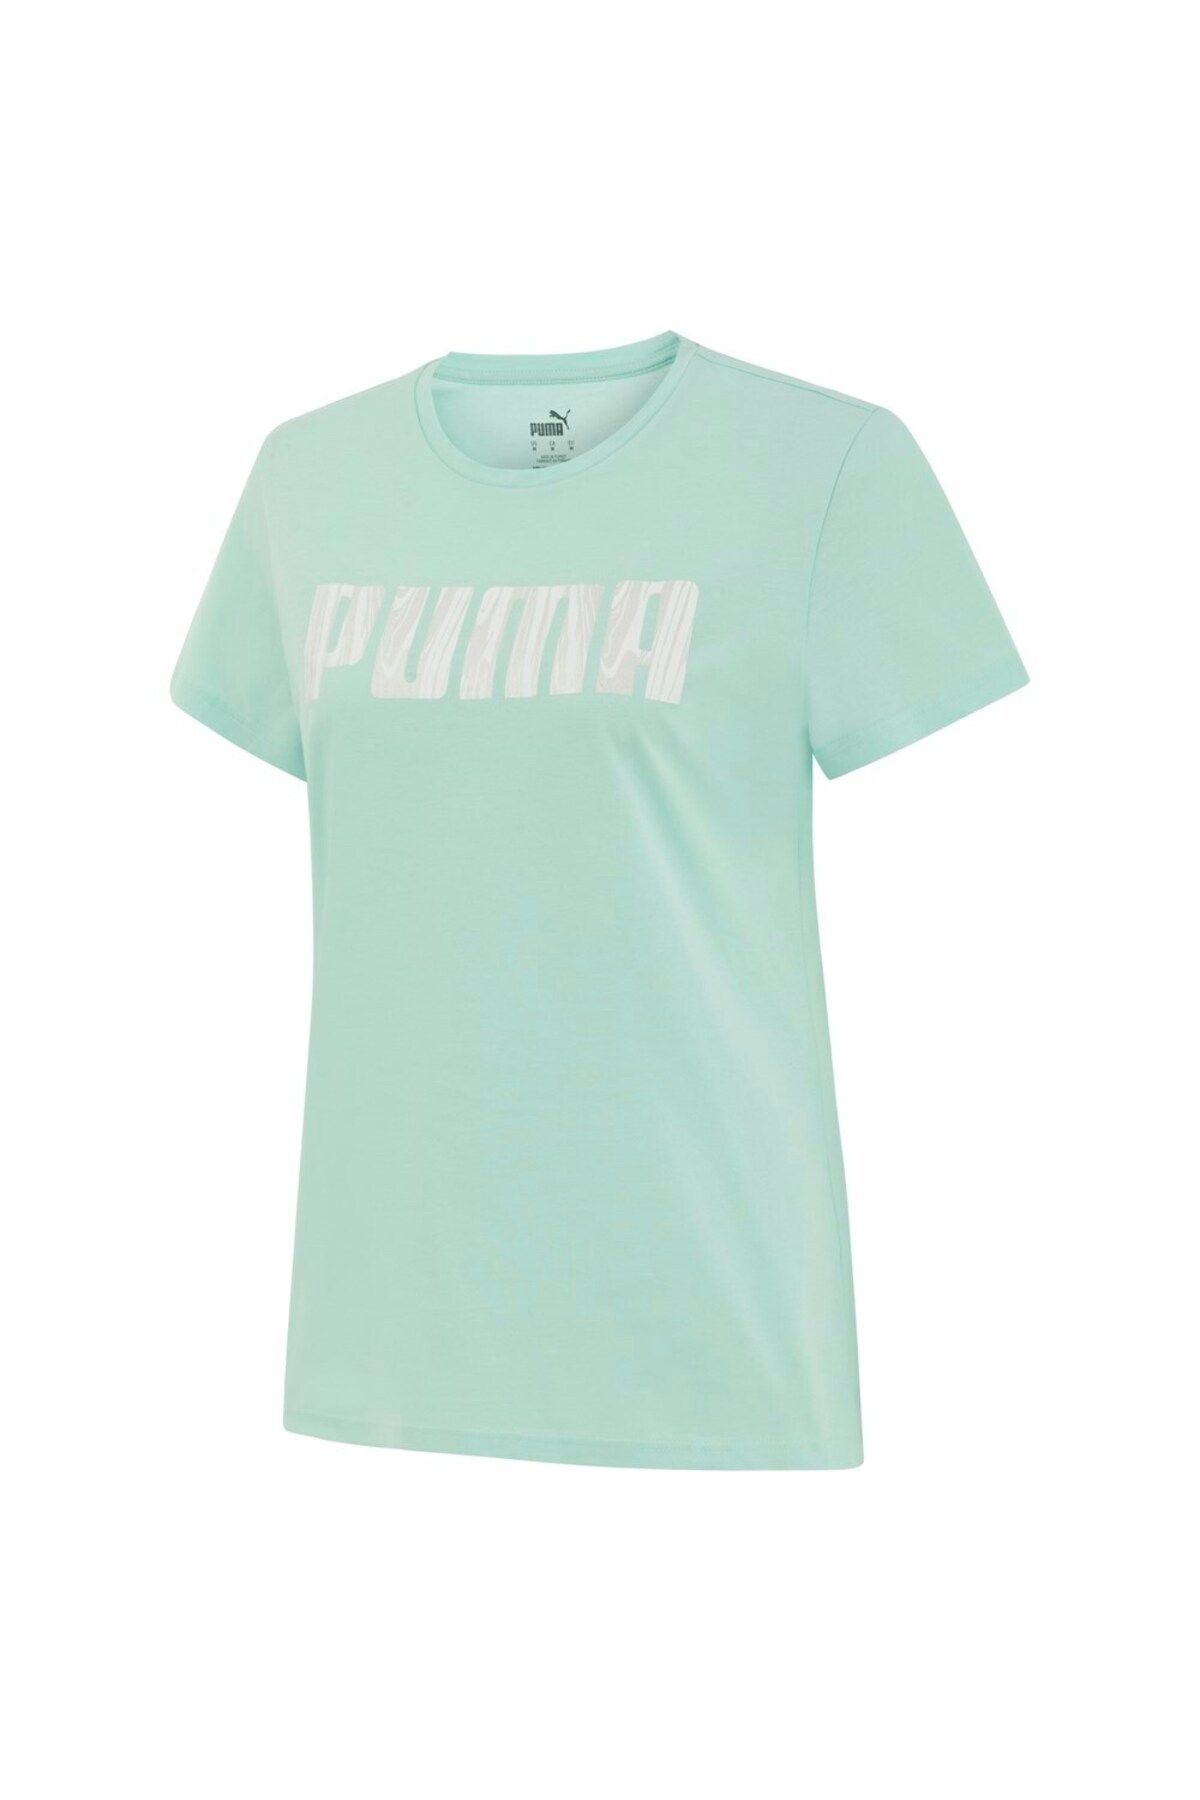 Puma Blank Base Women S Tee Kadın T-shirt